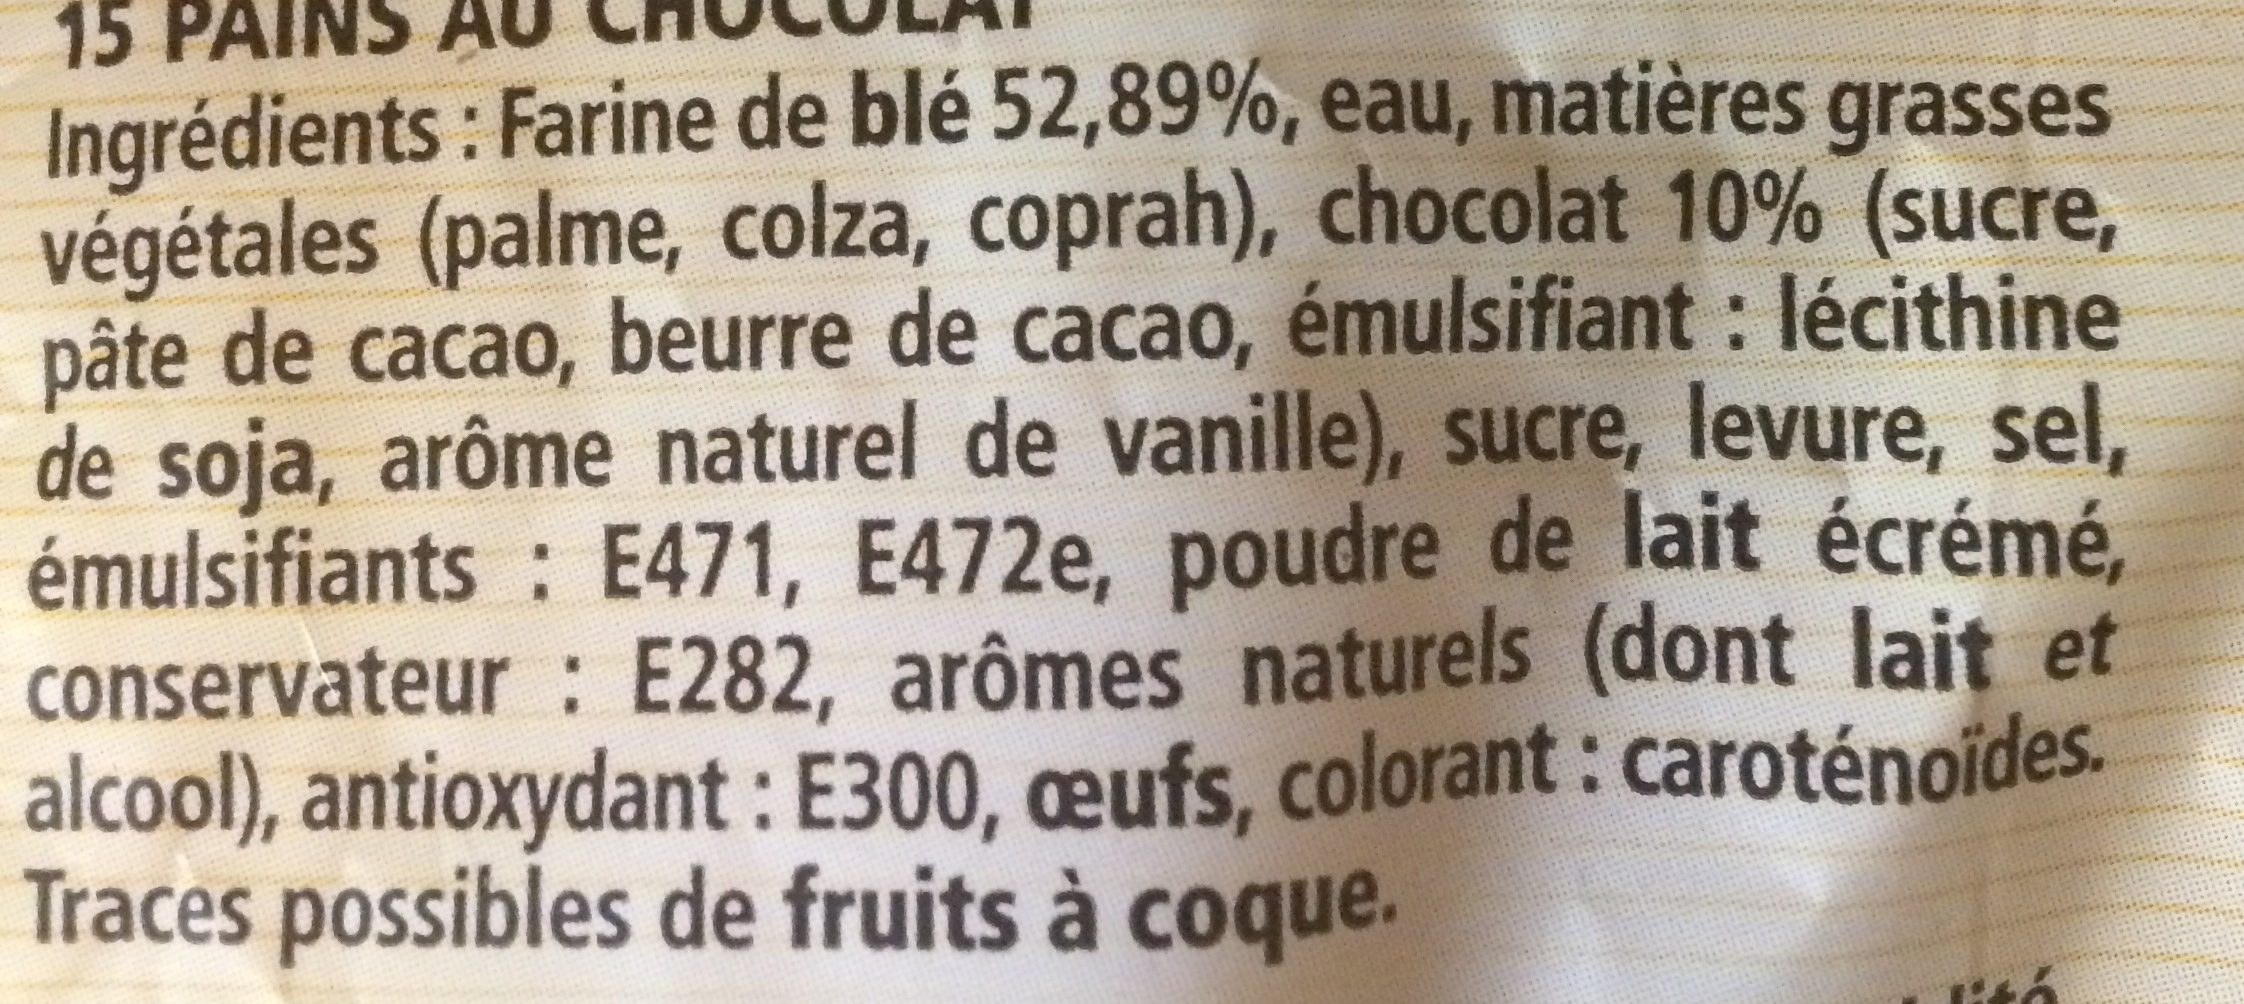 Pain au chocolat - Ingredients - fr